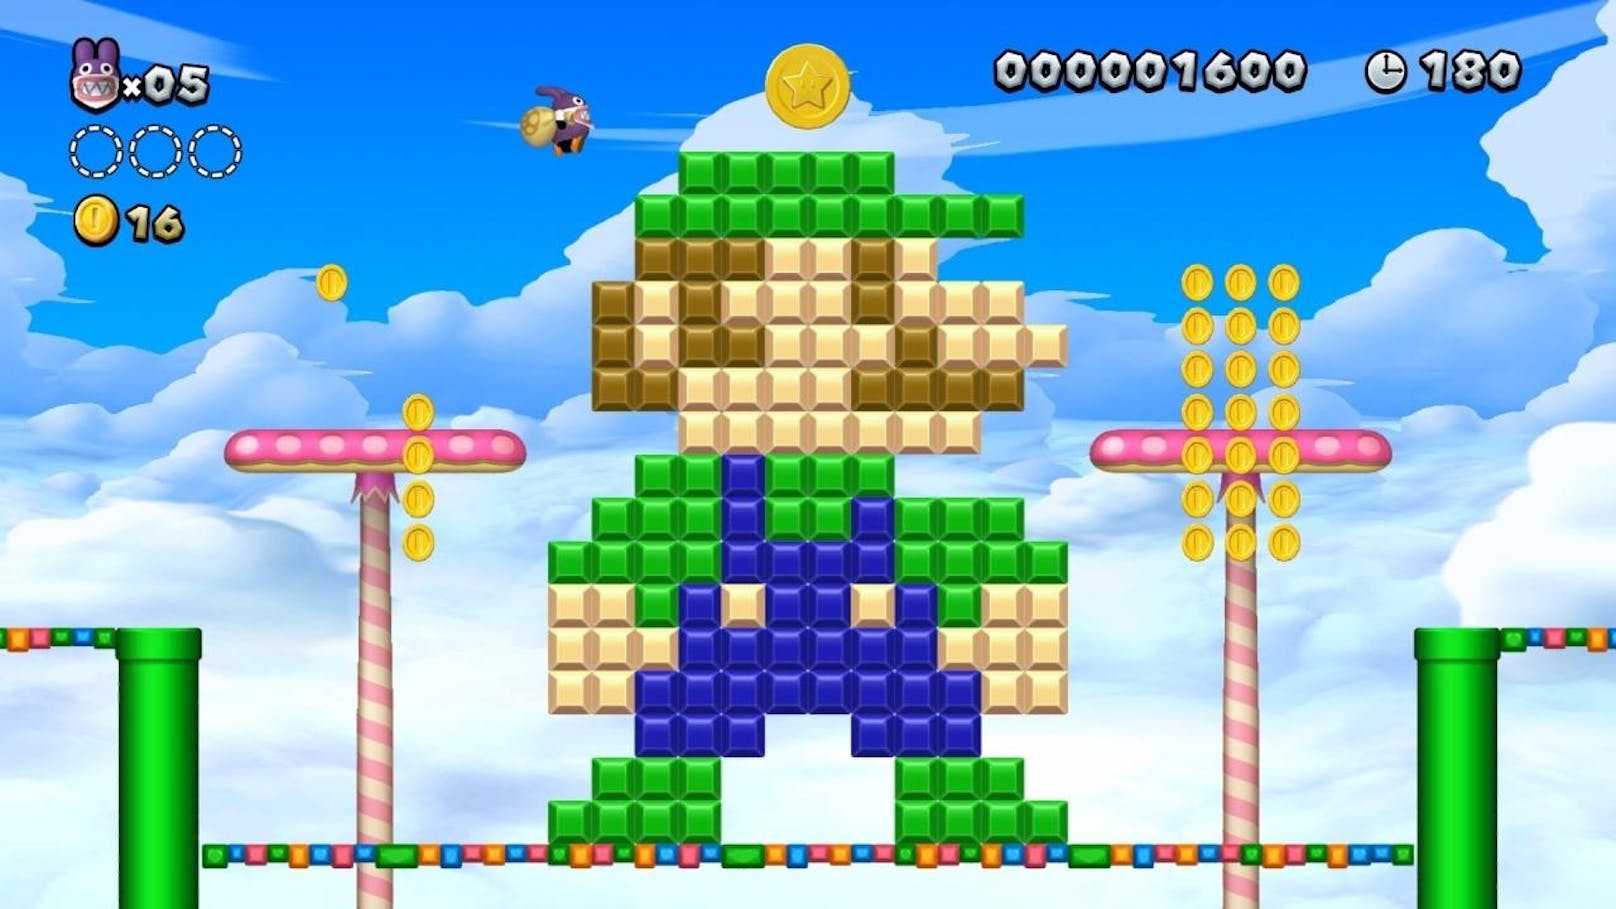 Der Switch-Titel hält auch für Kenner des Spiels einige Neuheiten parat. So kann man nicht nur Mario, Luigi und Toad als Spielfigur steuern, sondern auch Toadette sowie Mopsie. Die beiden neuen Figuren verändern auch das Gameplay dramatisch und Anfänger-tauglich.